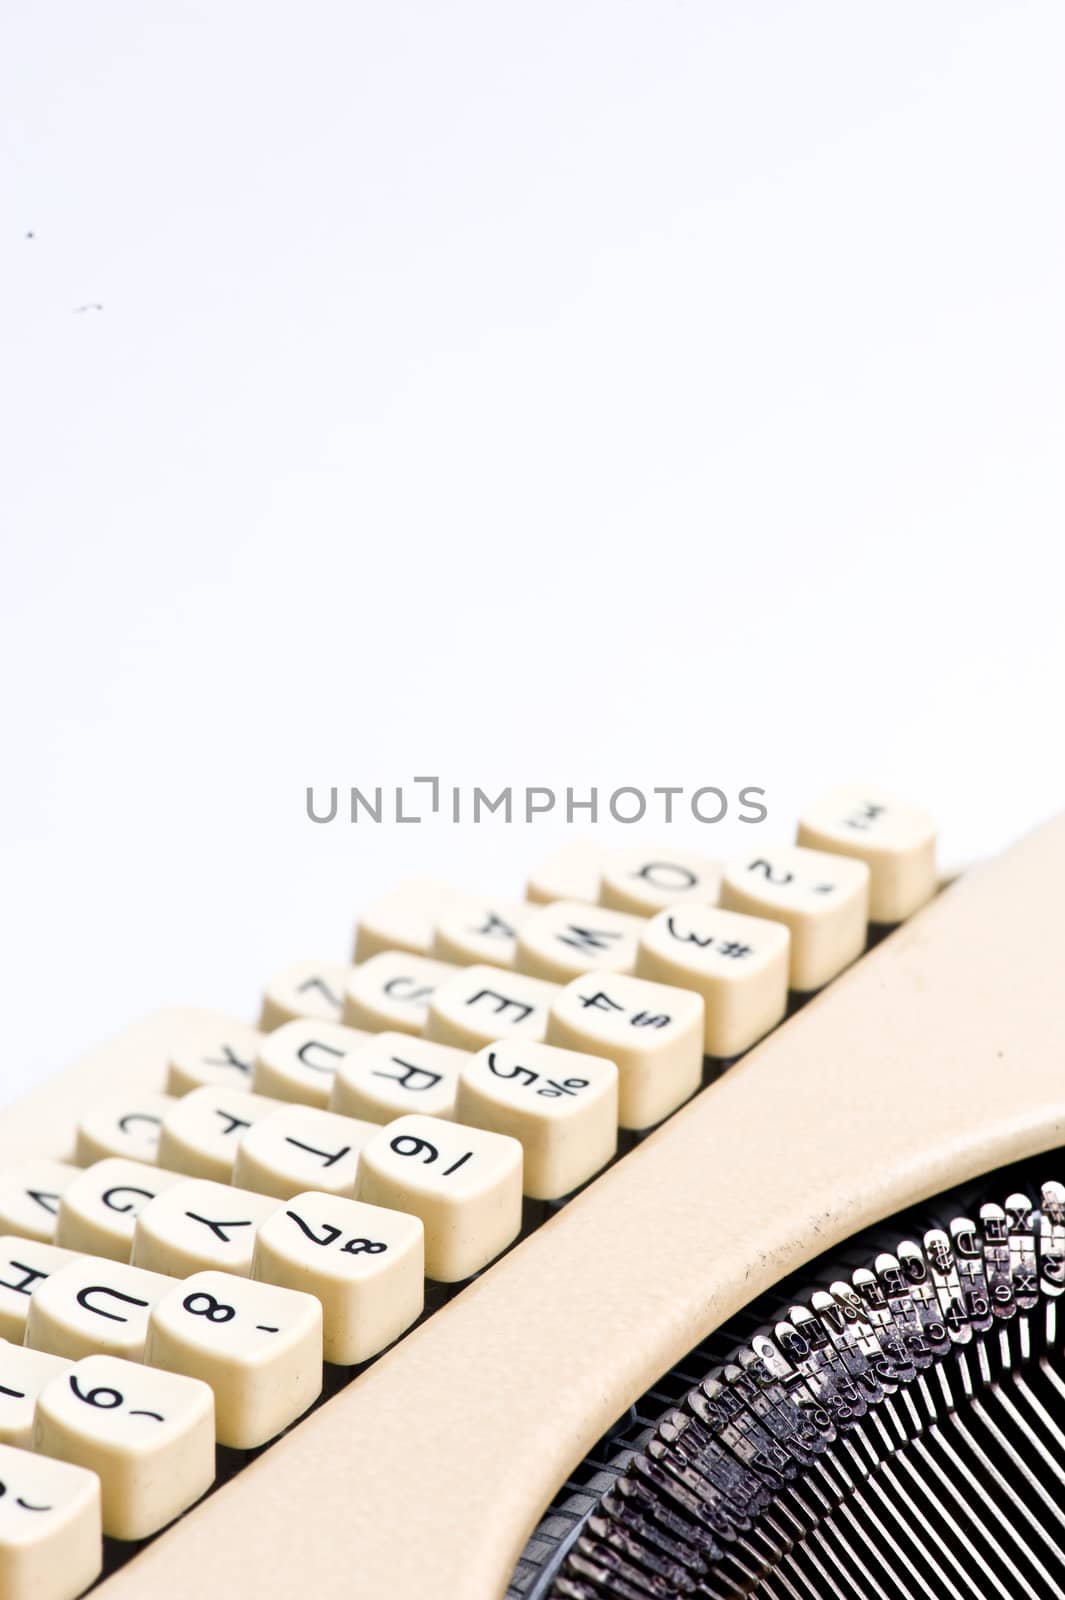 close up of typewriter keys